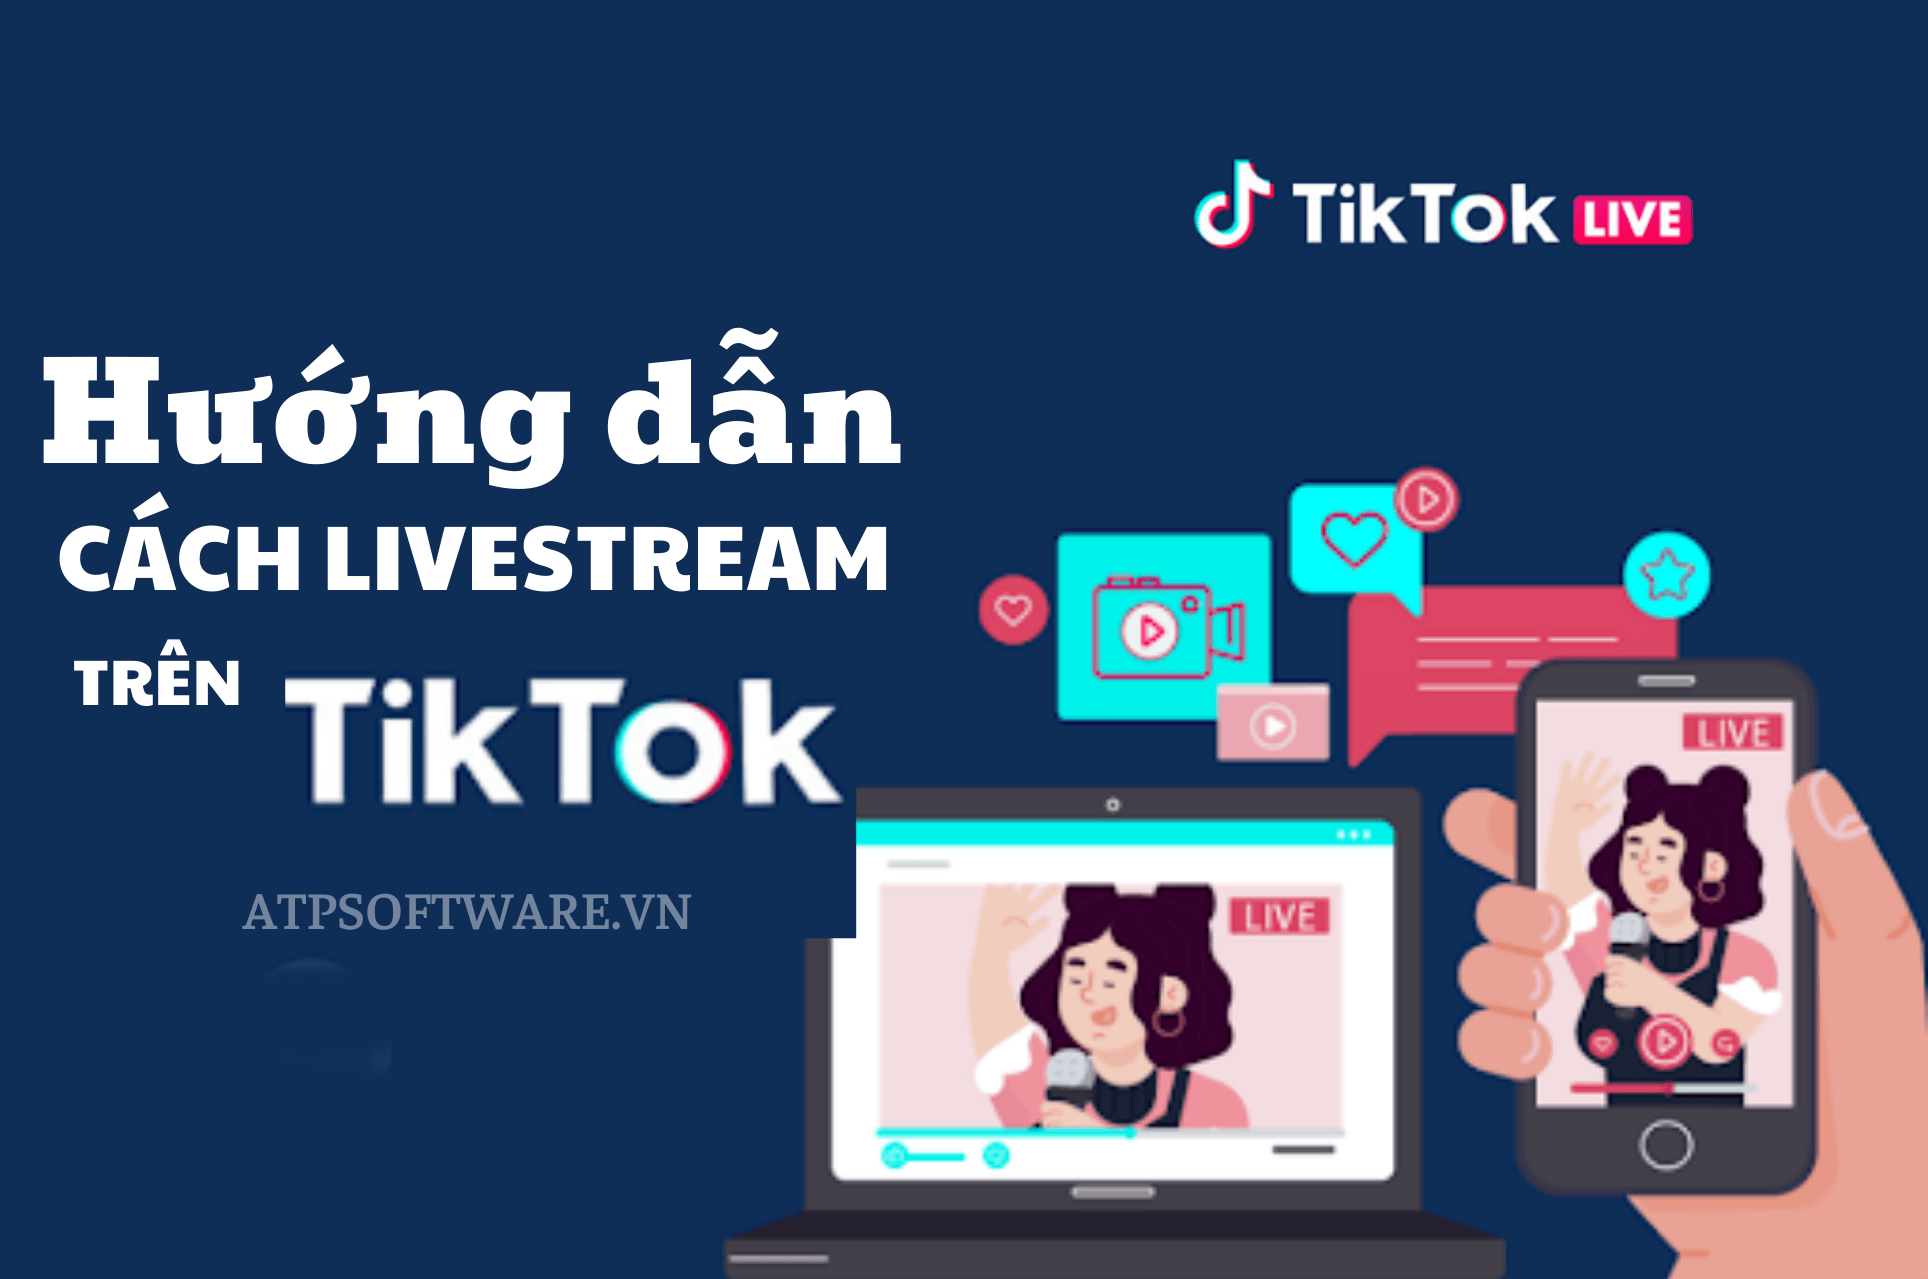 Hướng dẫn cách live trên Tiktok đơn giản nhất năm 2022